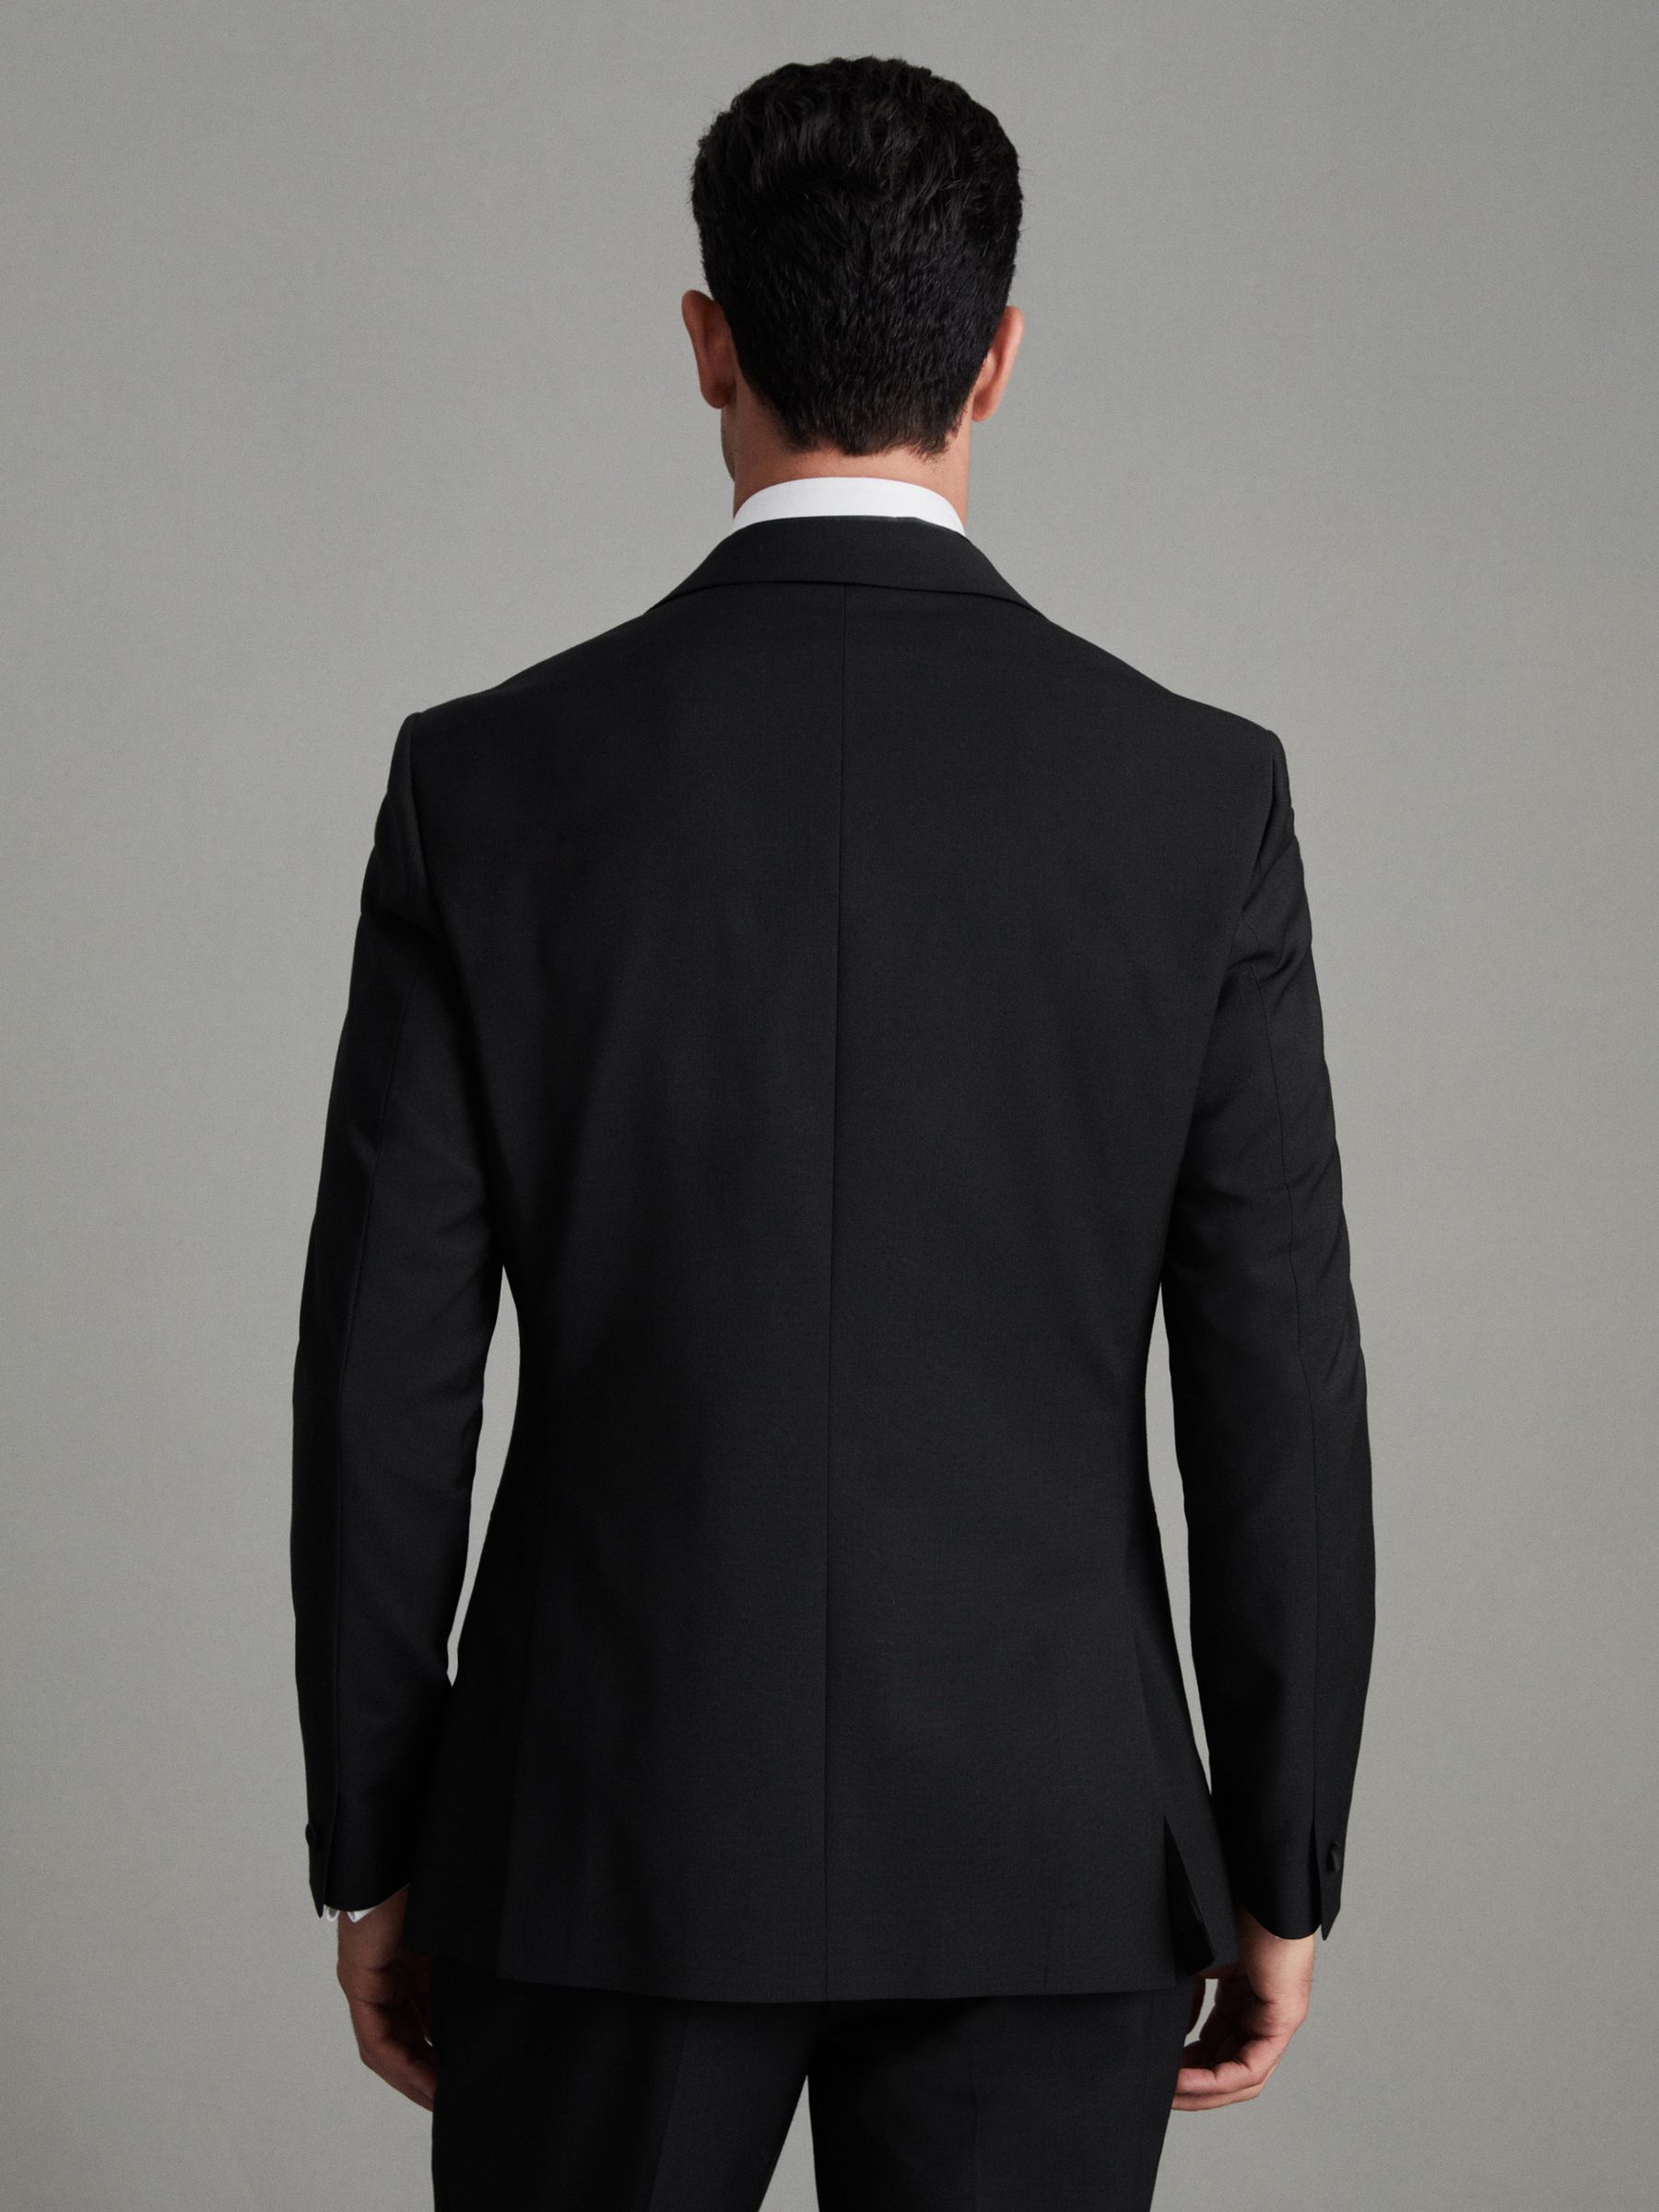 Notch Lapel Modern Fit Single Breasted Tuxedo Jacket in Black - REISS